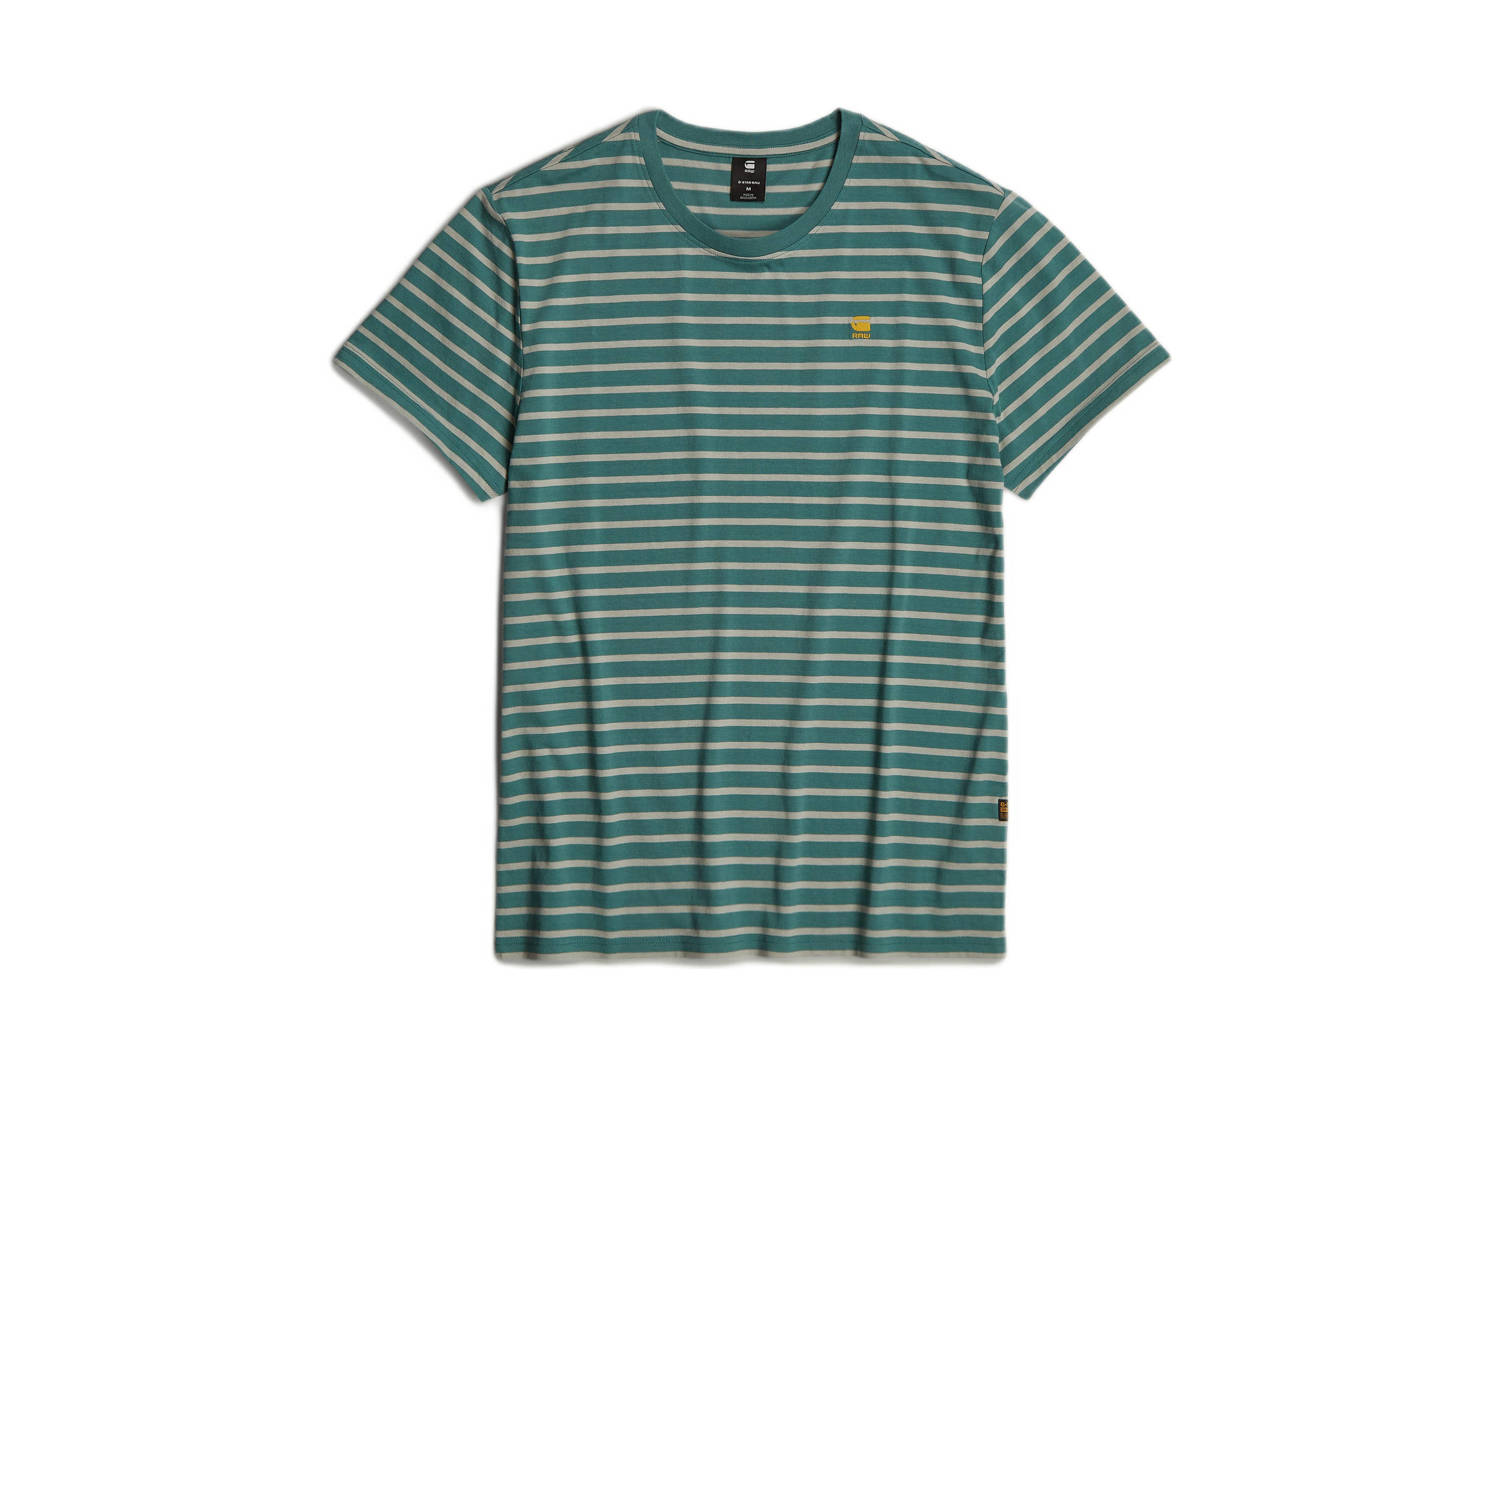 G-Star RAW gestreept slim fit T-shirt Stripe groen